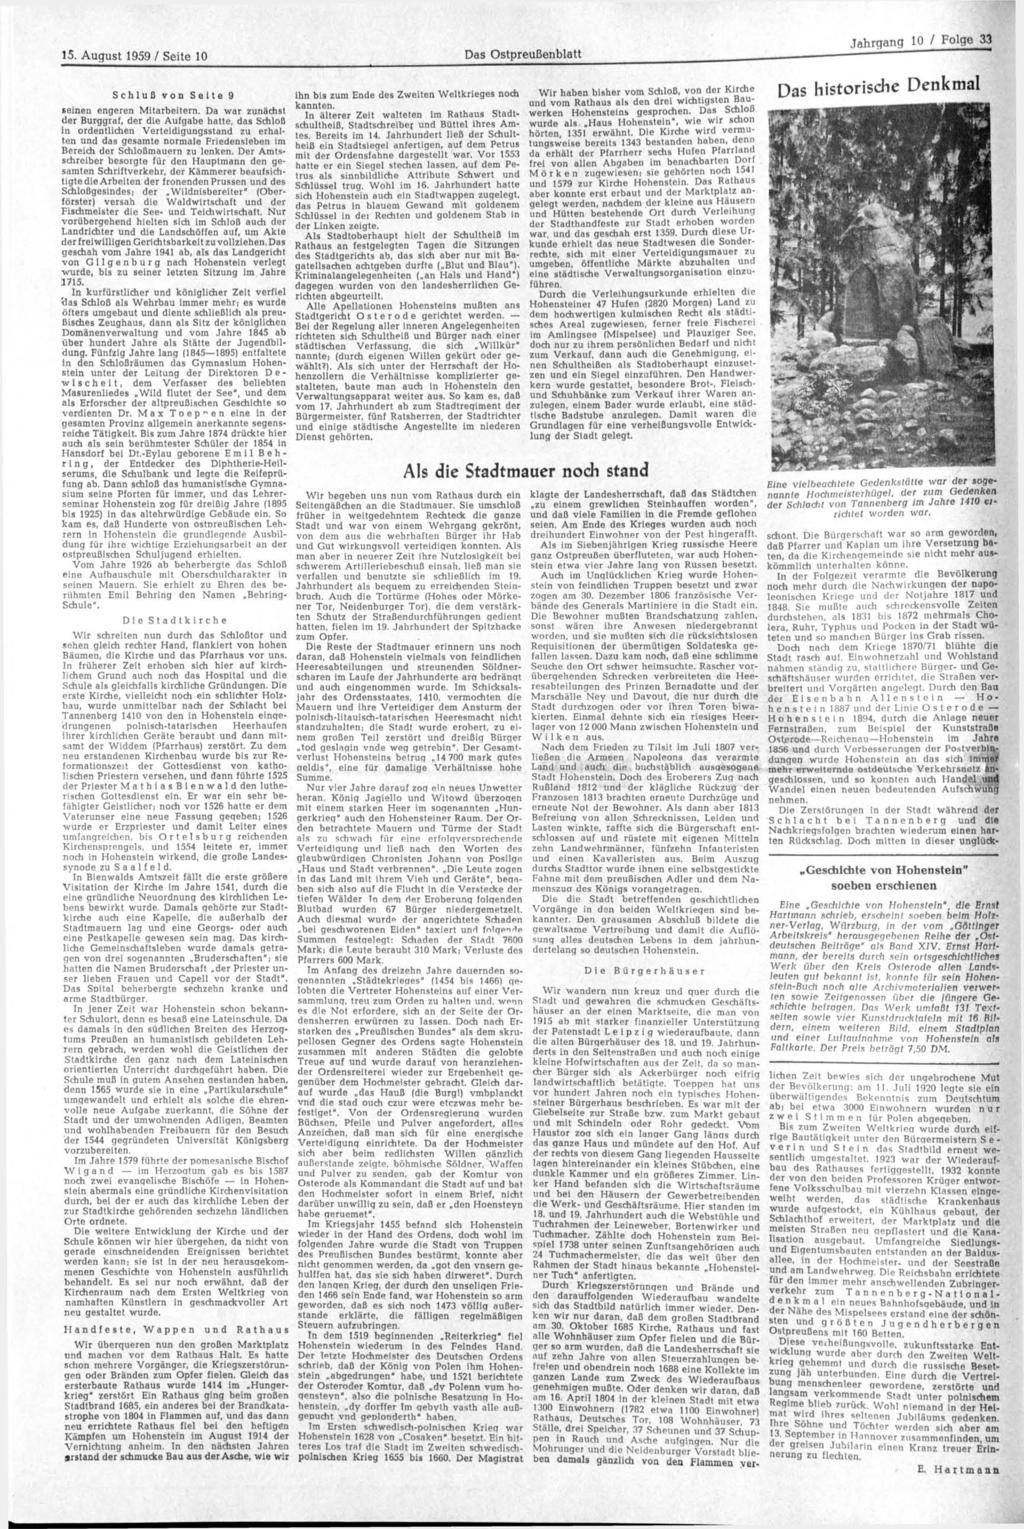 15. August 1959 / Seite 10 Das Ostpreußenblatt Schluß von Seite 9 seinen engeren Mitarbeitern.